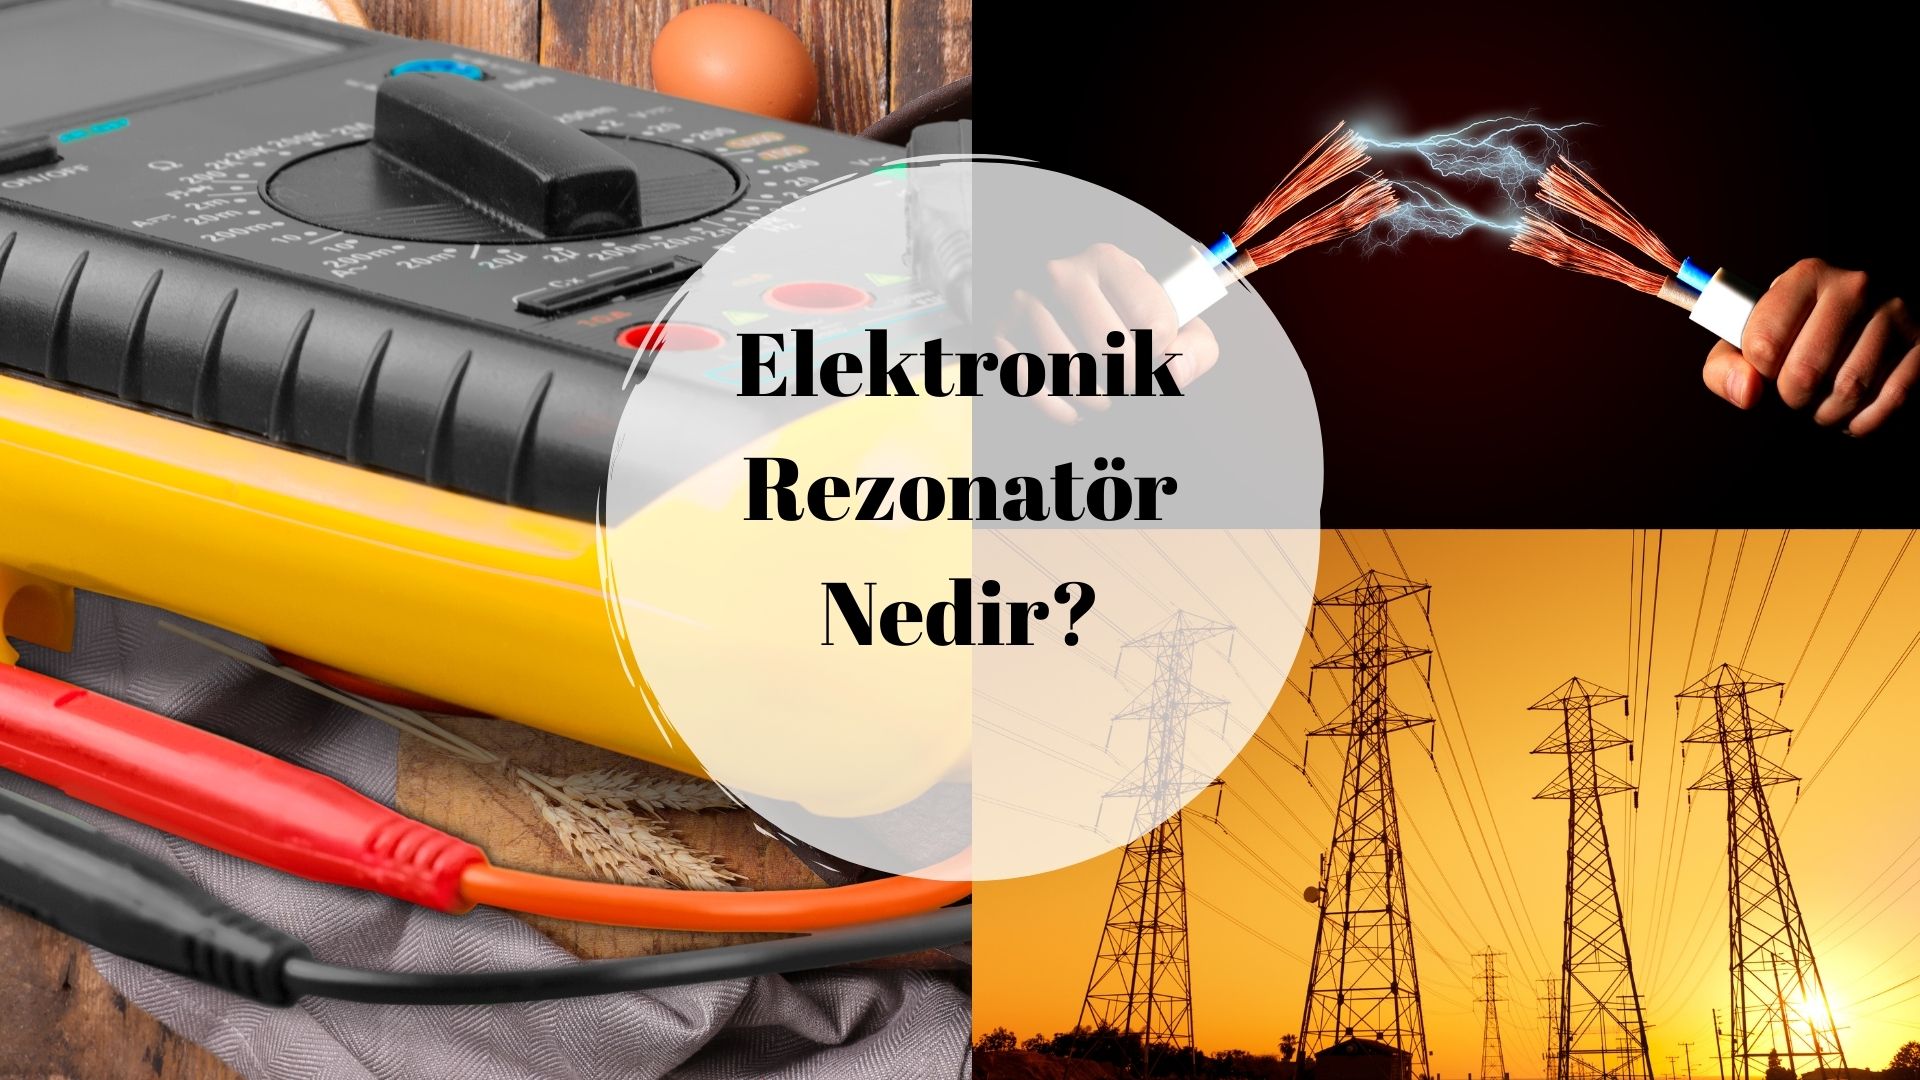 Elektronik Rezonatör Nedir?